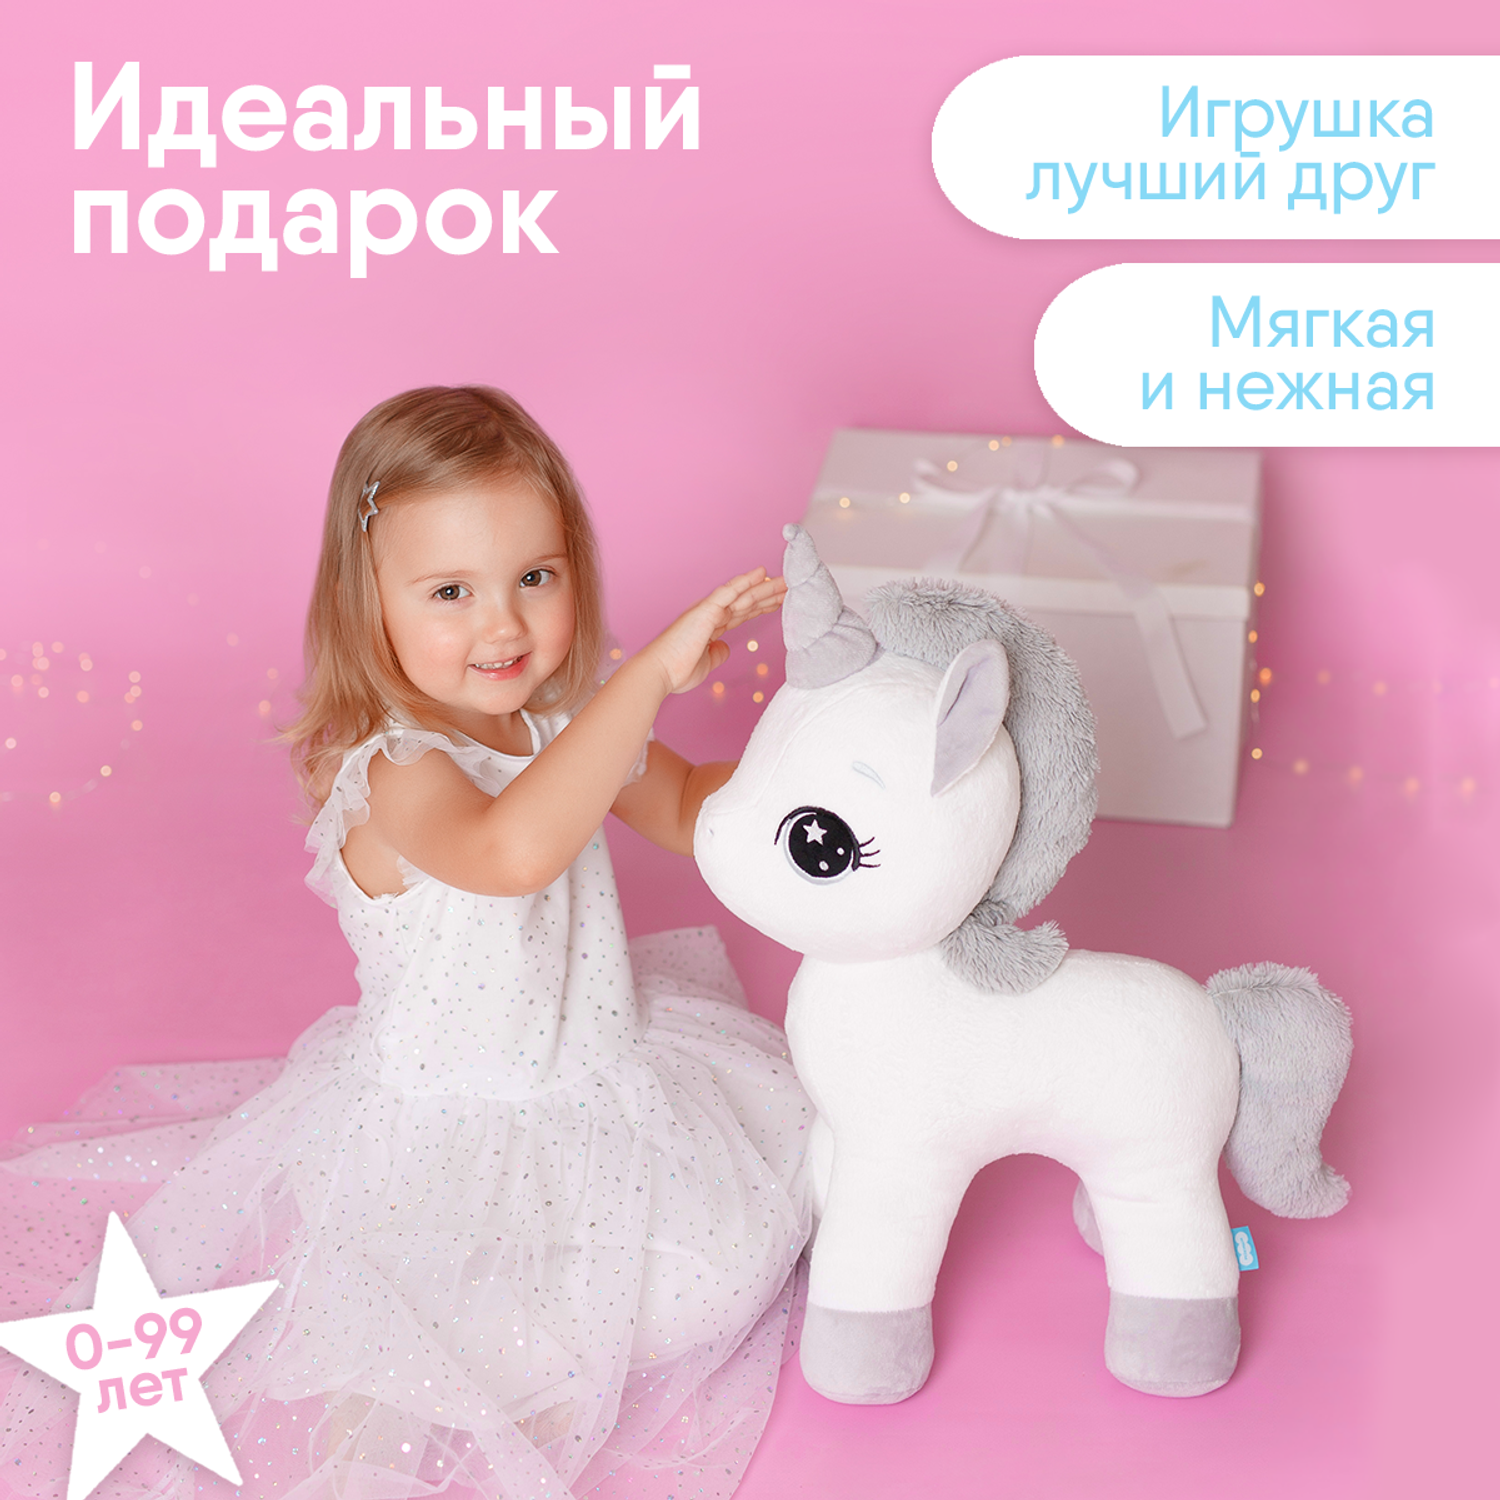 Мягкая игрушка Мякиши большая плюшевая Единорог Dream белый подушка для детей пони подарок - фото 2